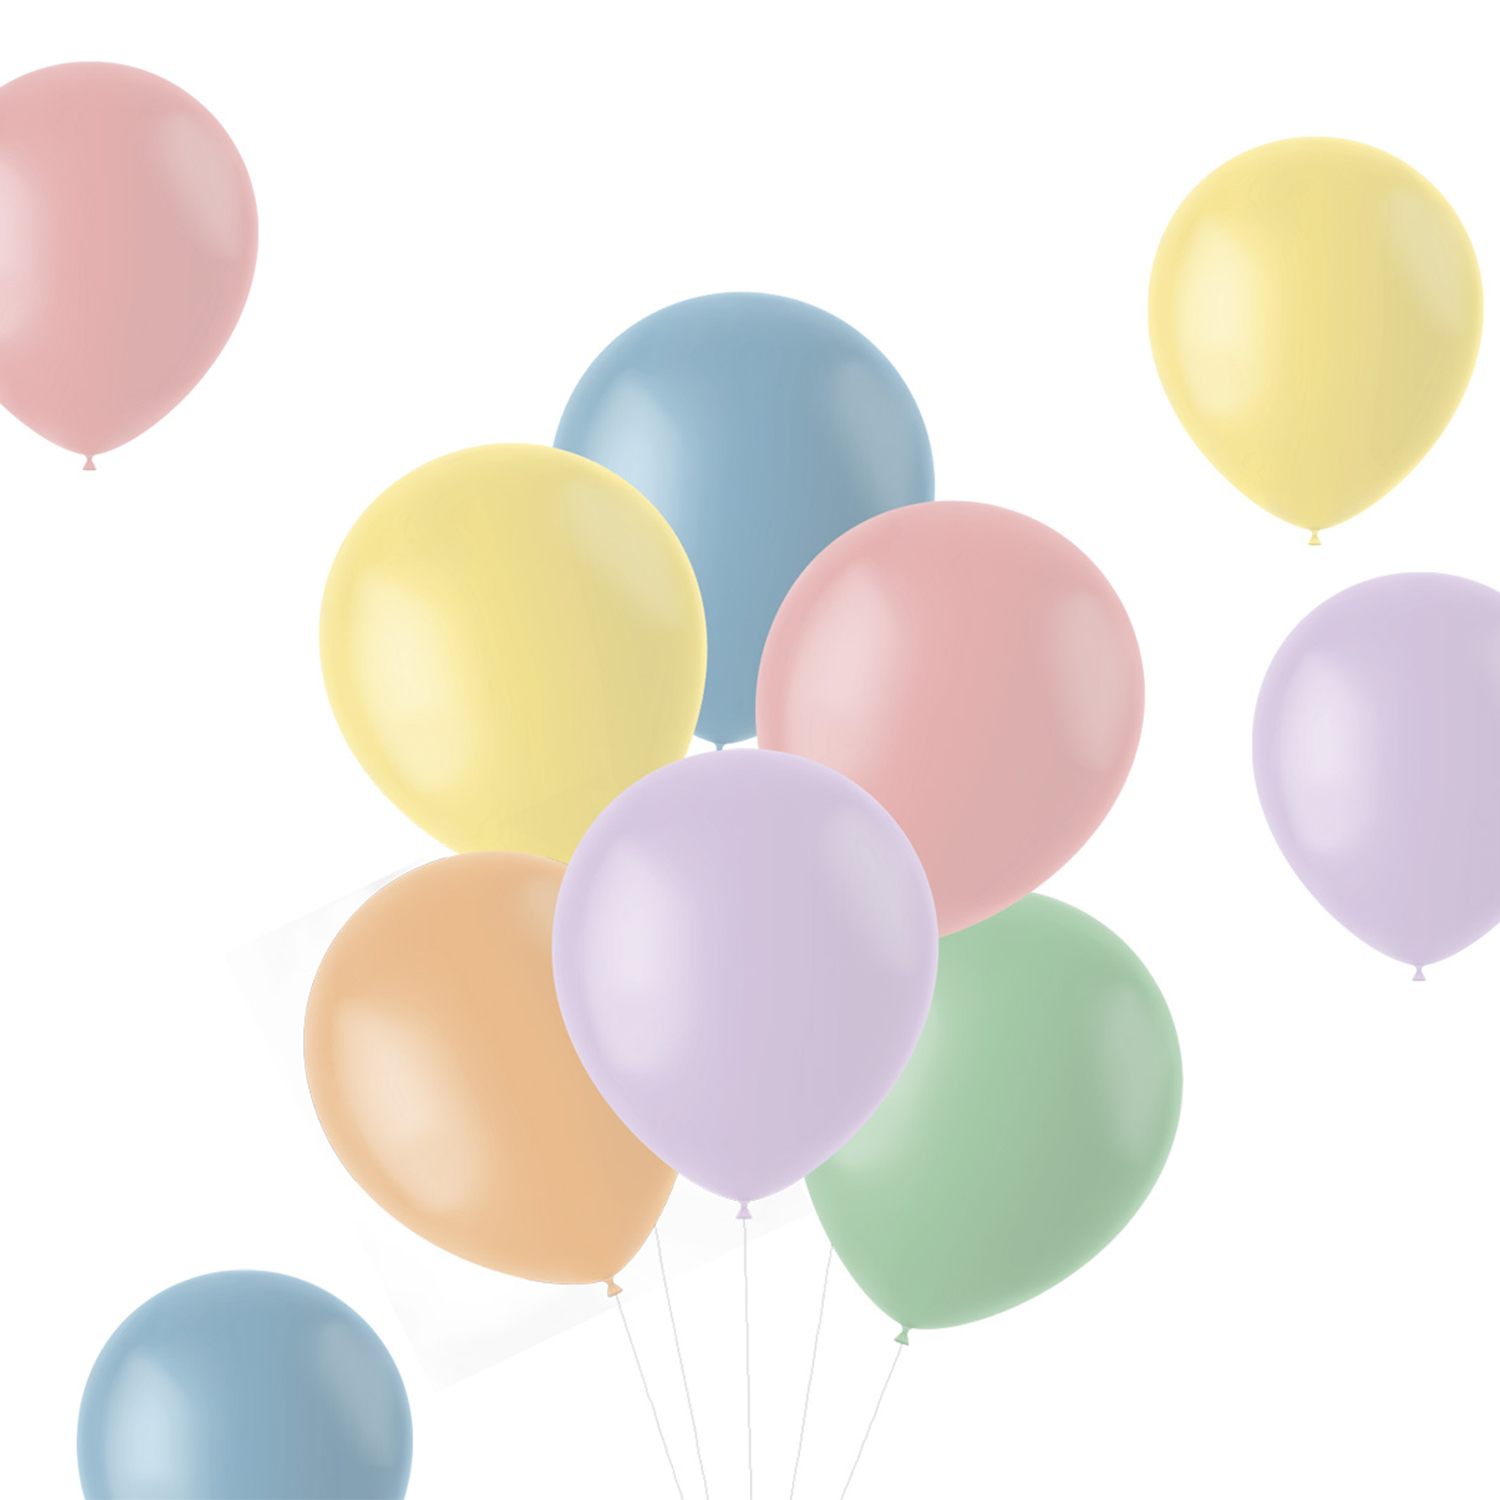 NEU Latex-Luftballons matt, 33cm, Pastelltöne bunt gemischt, 100 Stück